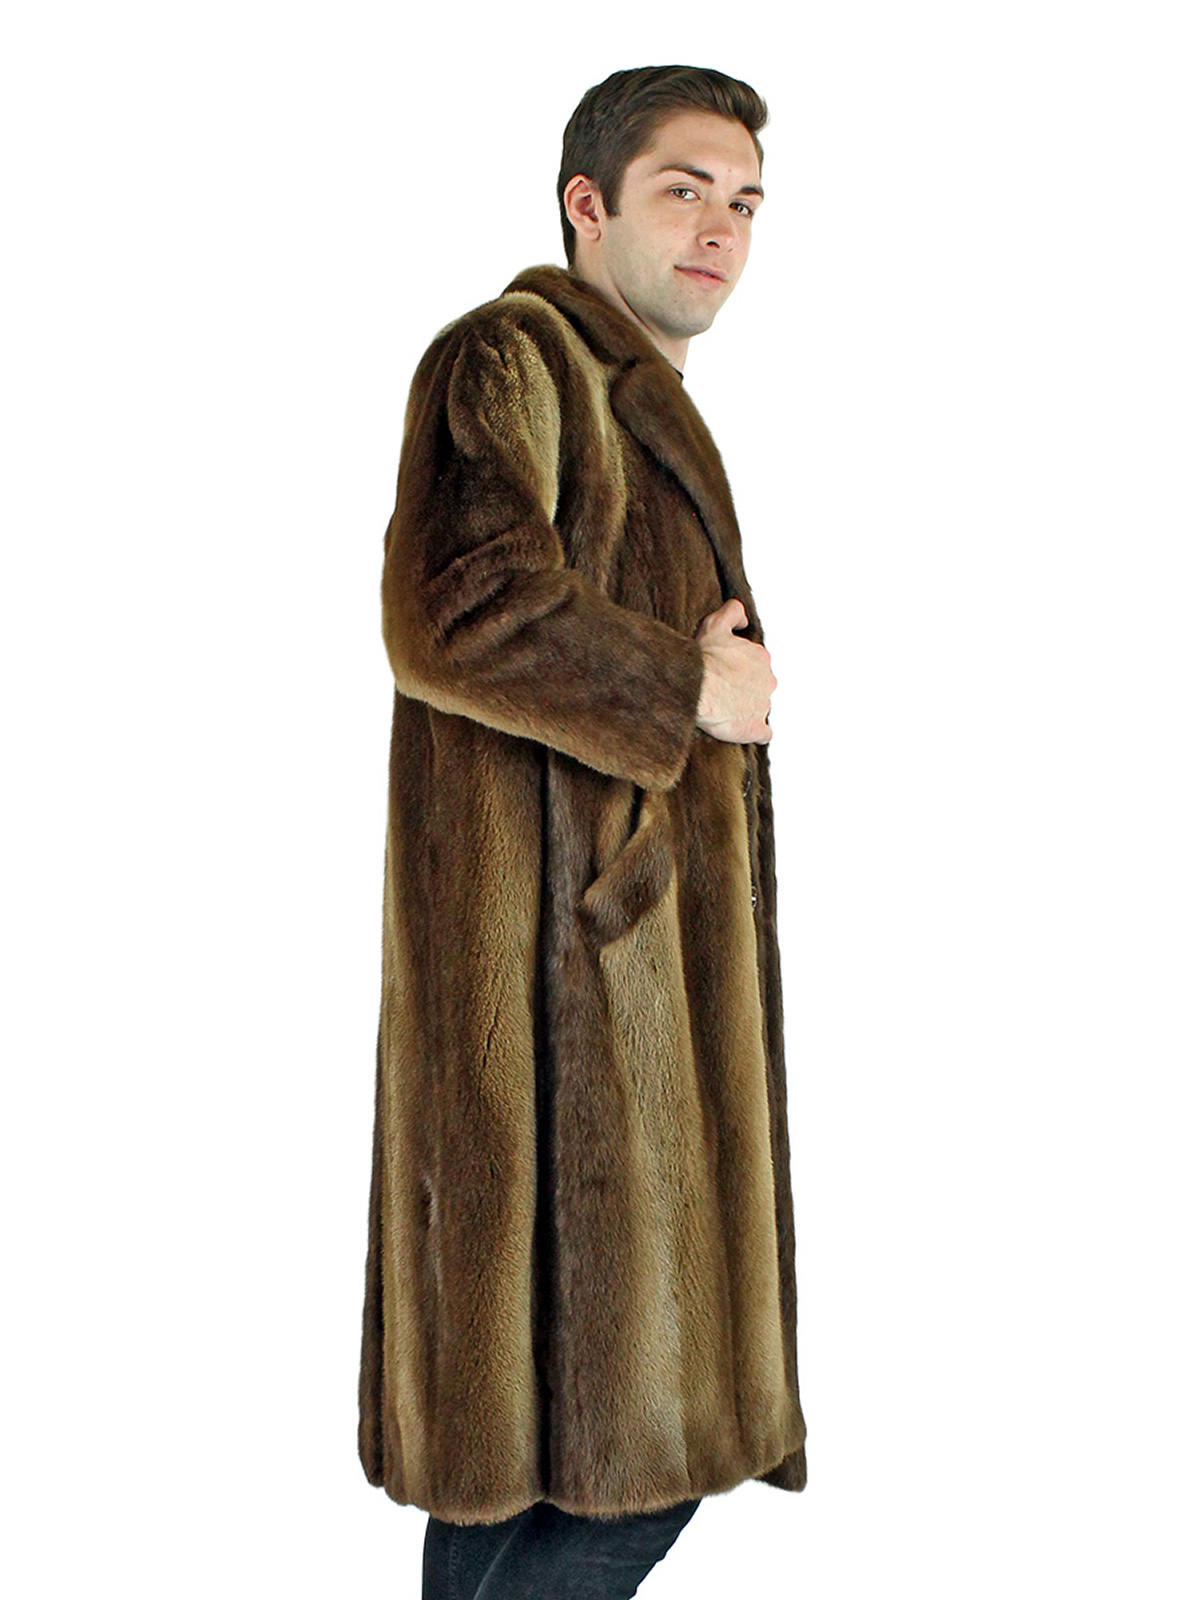 Natural Otter Fur Coat - Men's Fur Coat - Small| Estate Furs